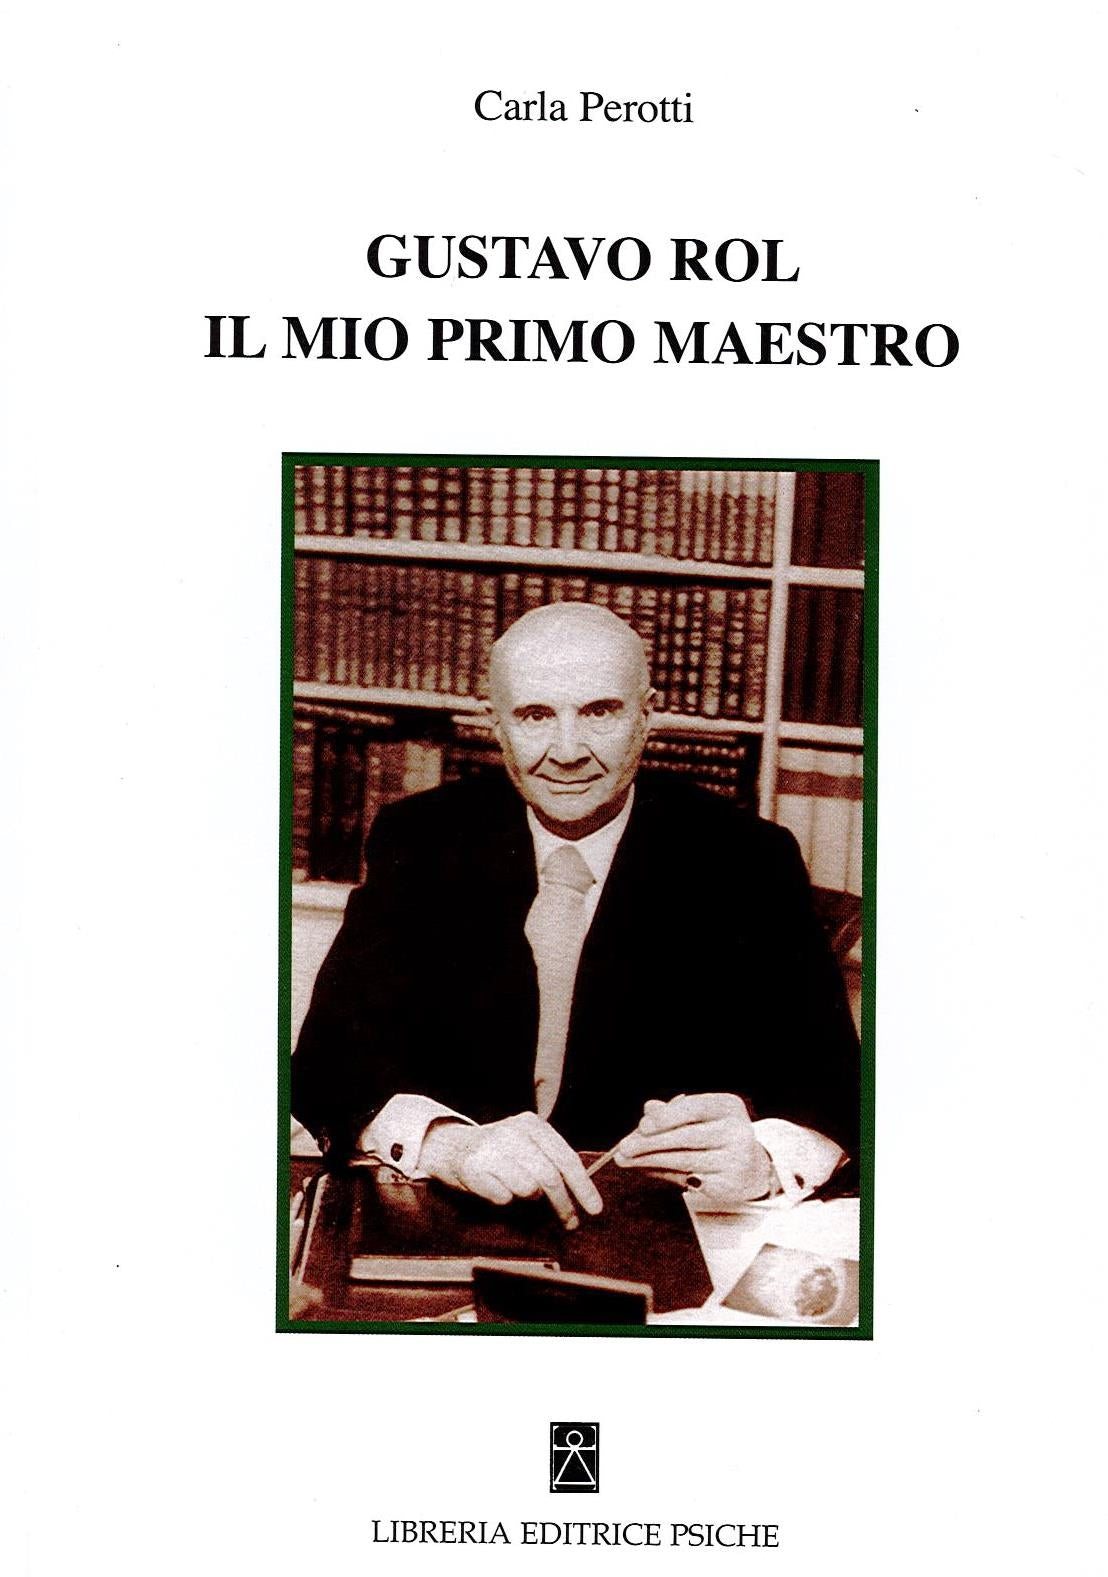 GUSTAVO ROL IL MIO PRIMO MAESTRO - Carla Perotti